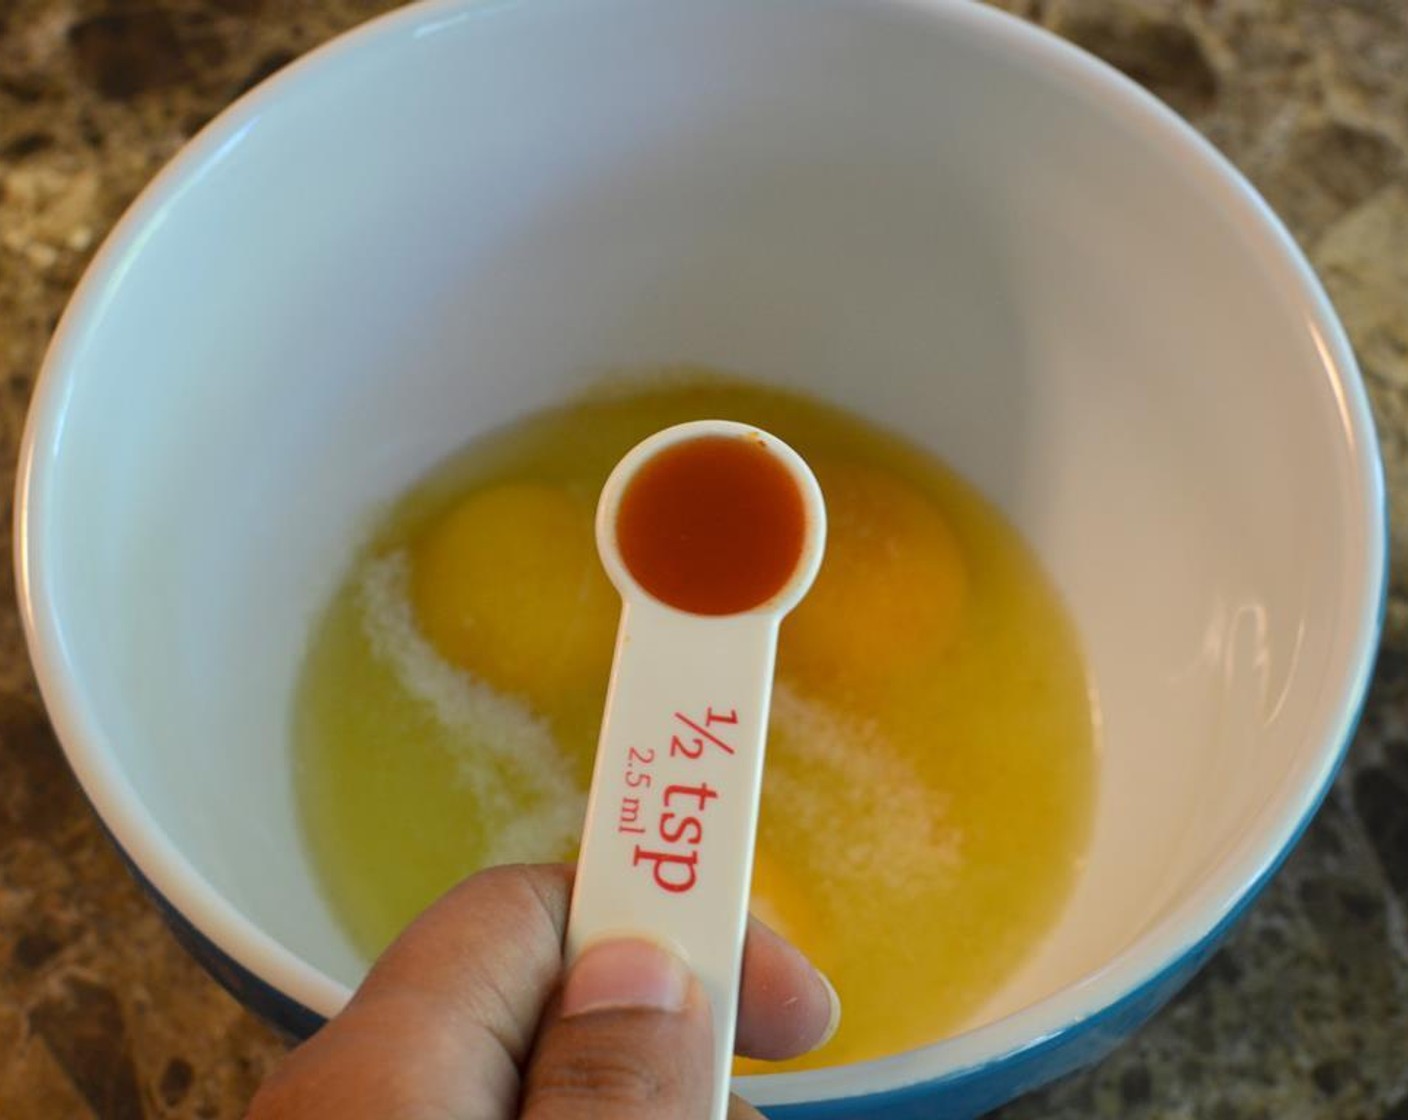 Schritt 3 In einer kleinen Schüssel die Eier (3), die Hälfte des Knoblauch-Salzes (1 TL) und die scharfe Sauce (nach Bedarf) verquirlen.